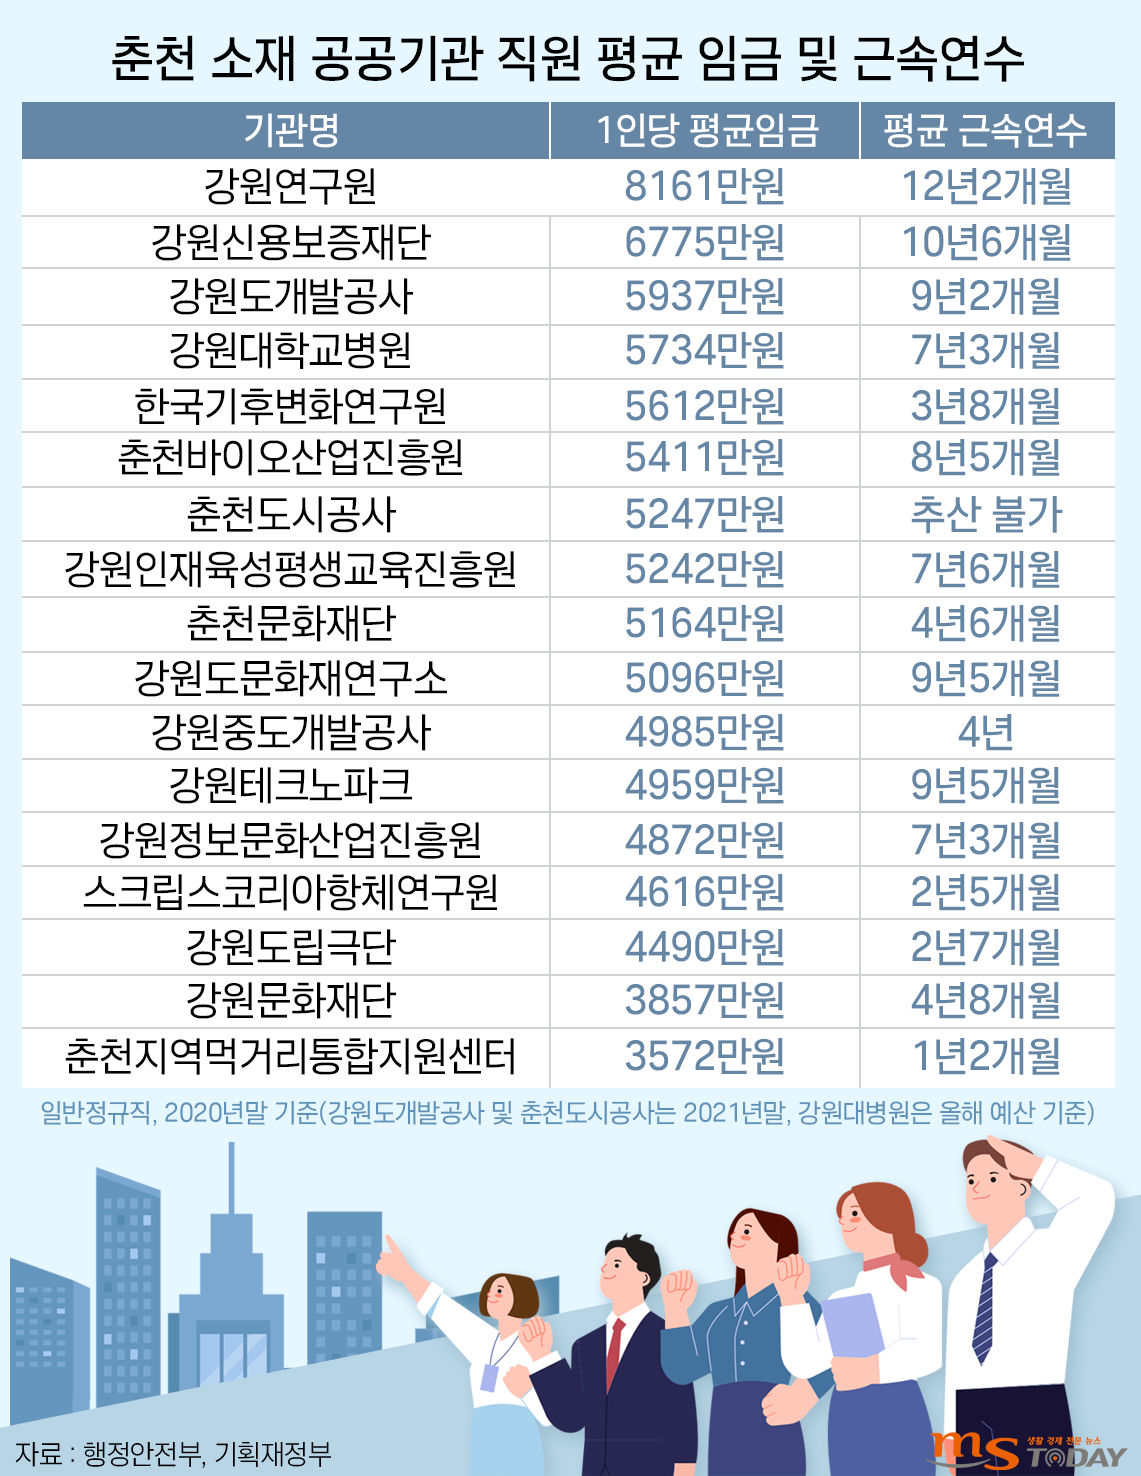 춘천에 소재한 공공기관 17곳의 정규직 직원 평균 임금과 근속연수. (그래픽=박지영 기자)